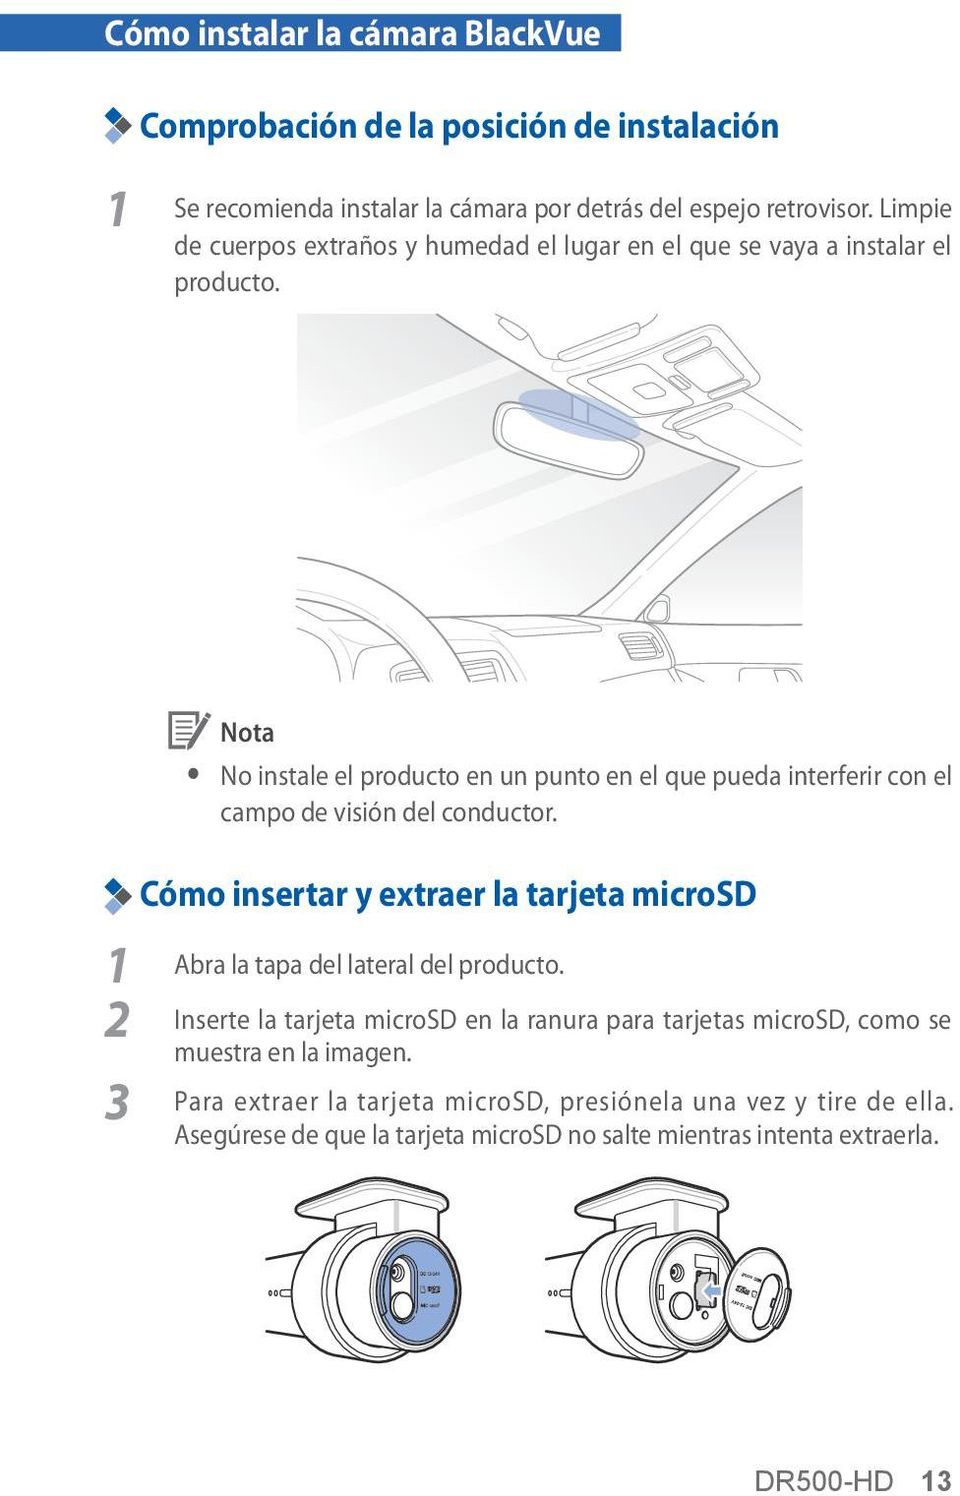 3 y No instale el producto en un punto en el que pueda interferir con el campo de visión del conductor.